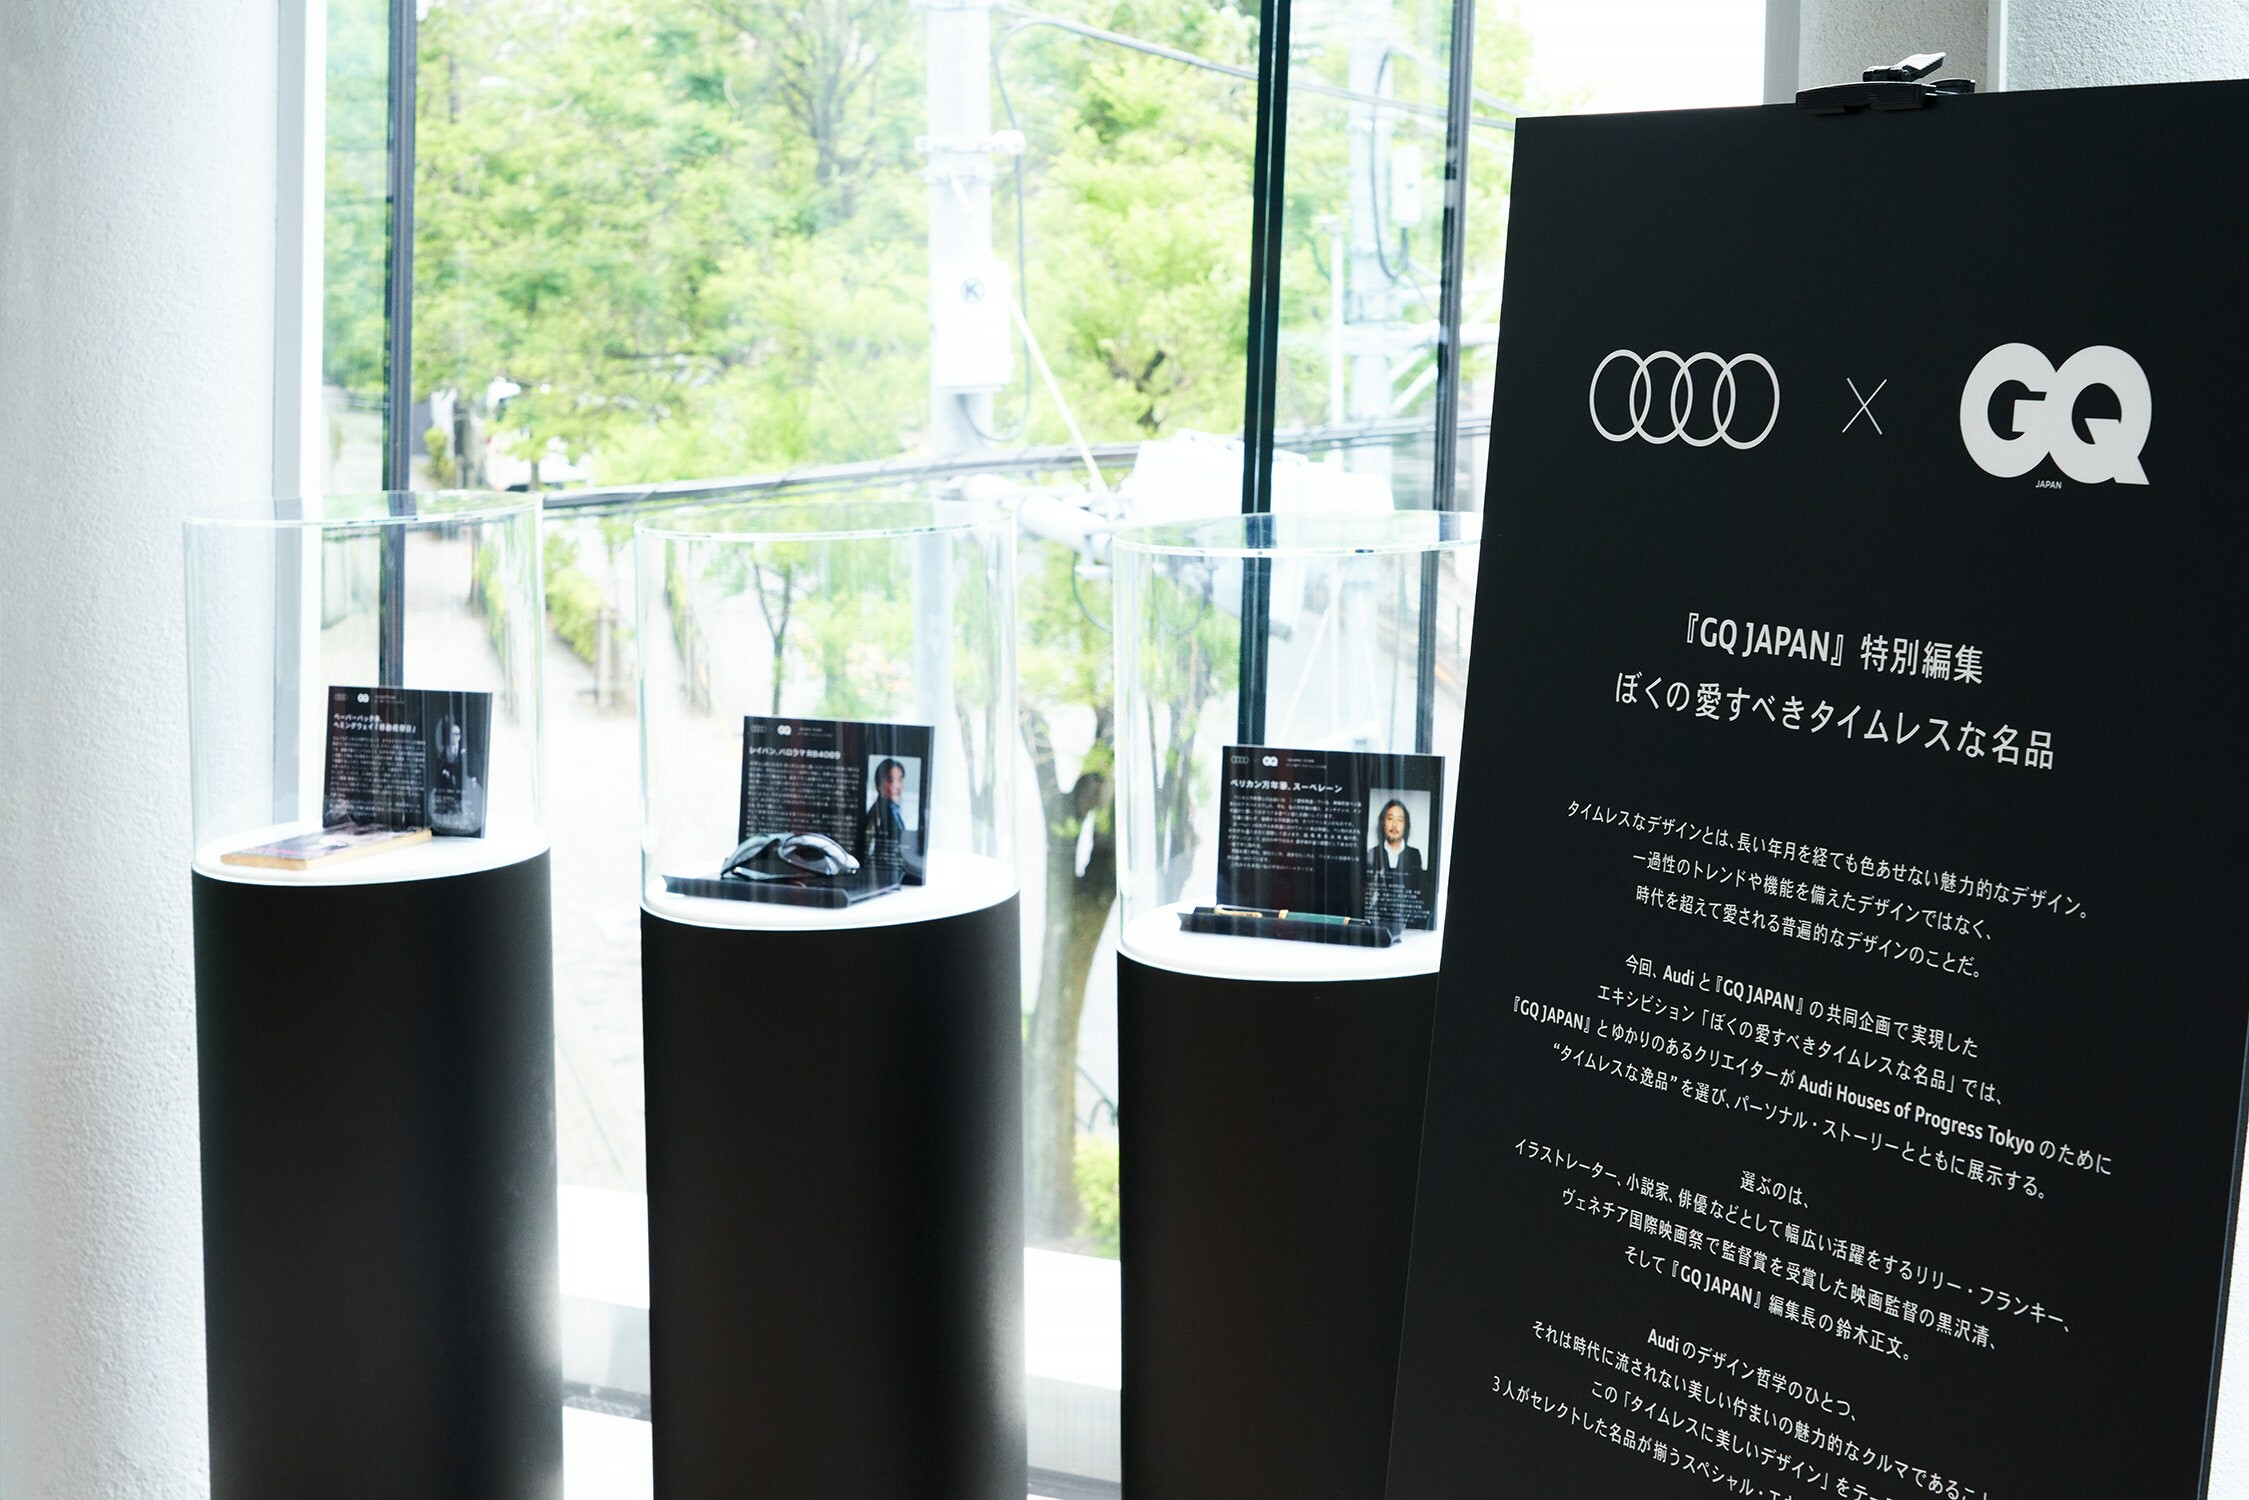 Audi x GQ JAPANが「タイムレス・デザイン」をテーマにしたエキシビションを開催中